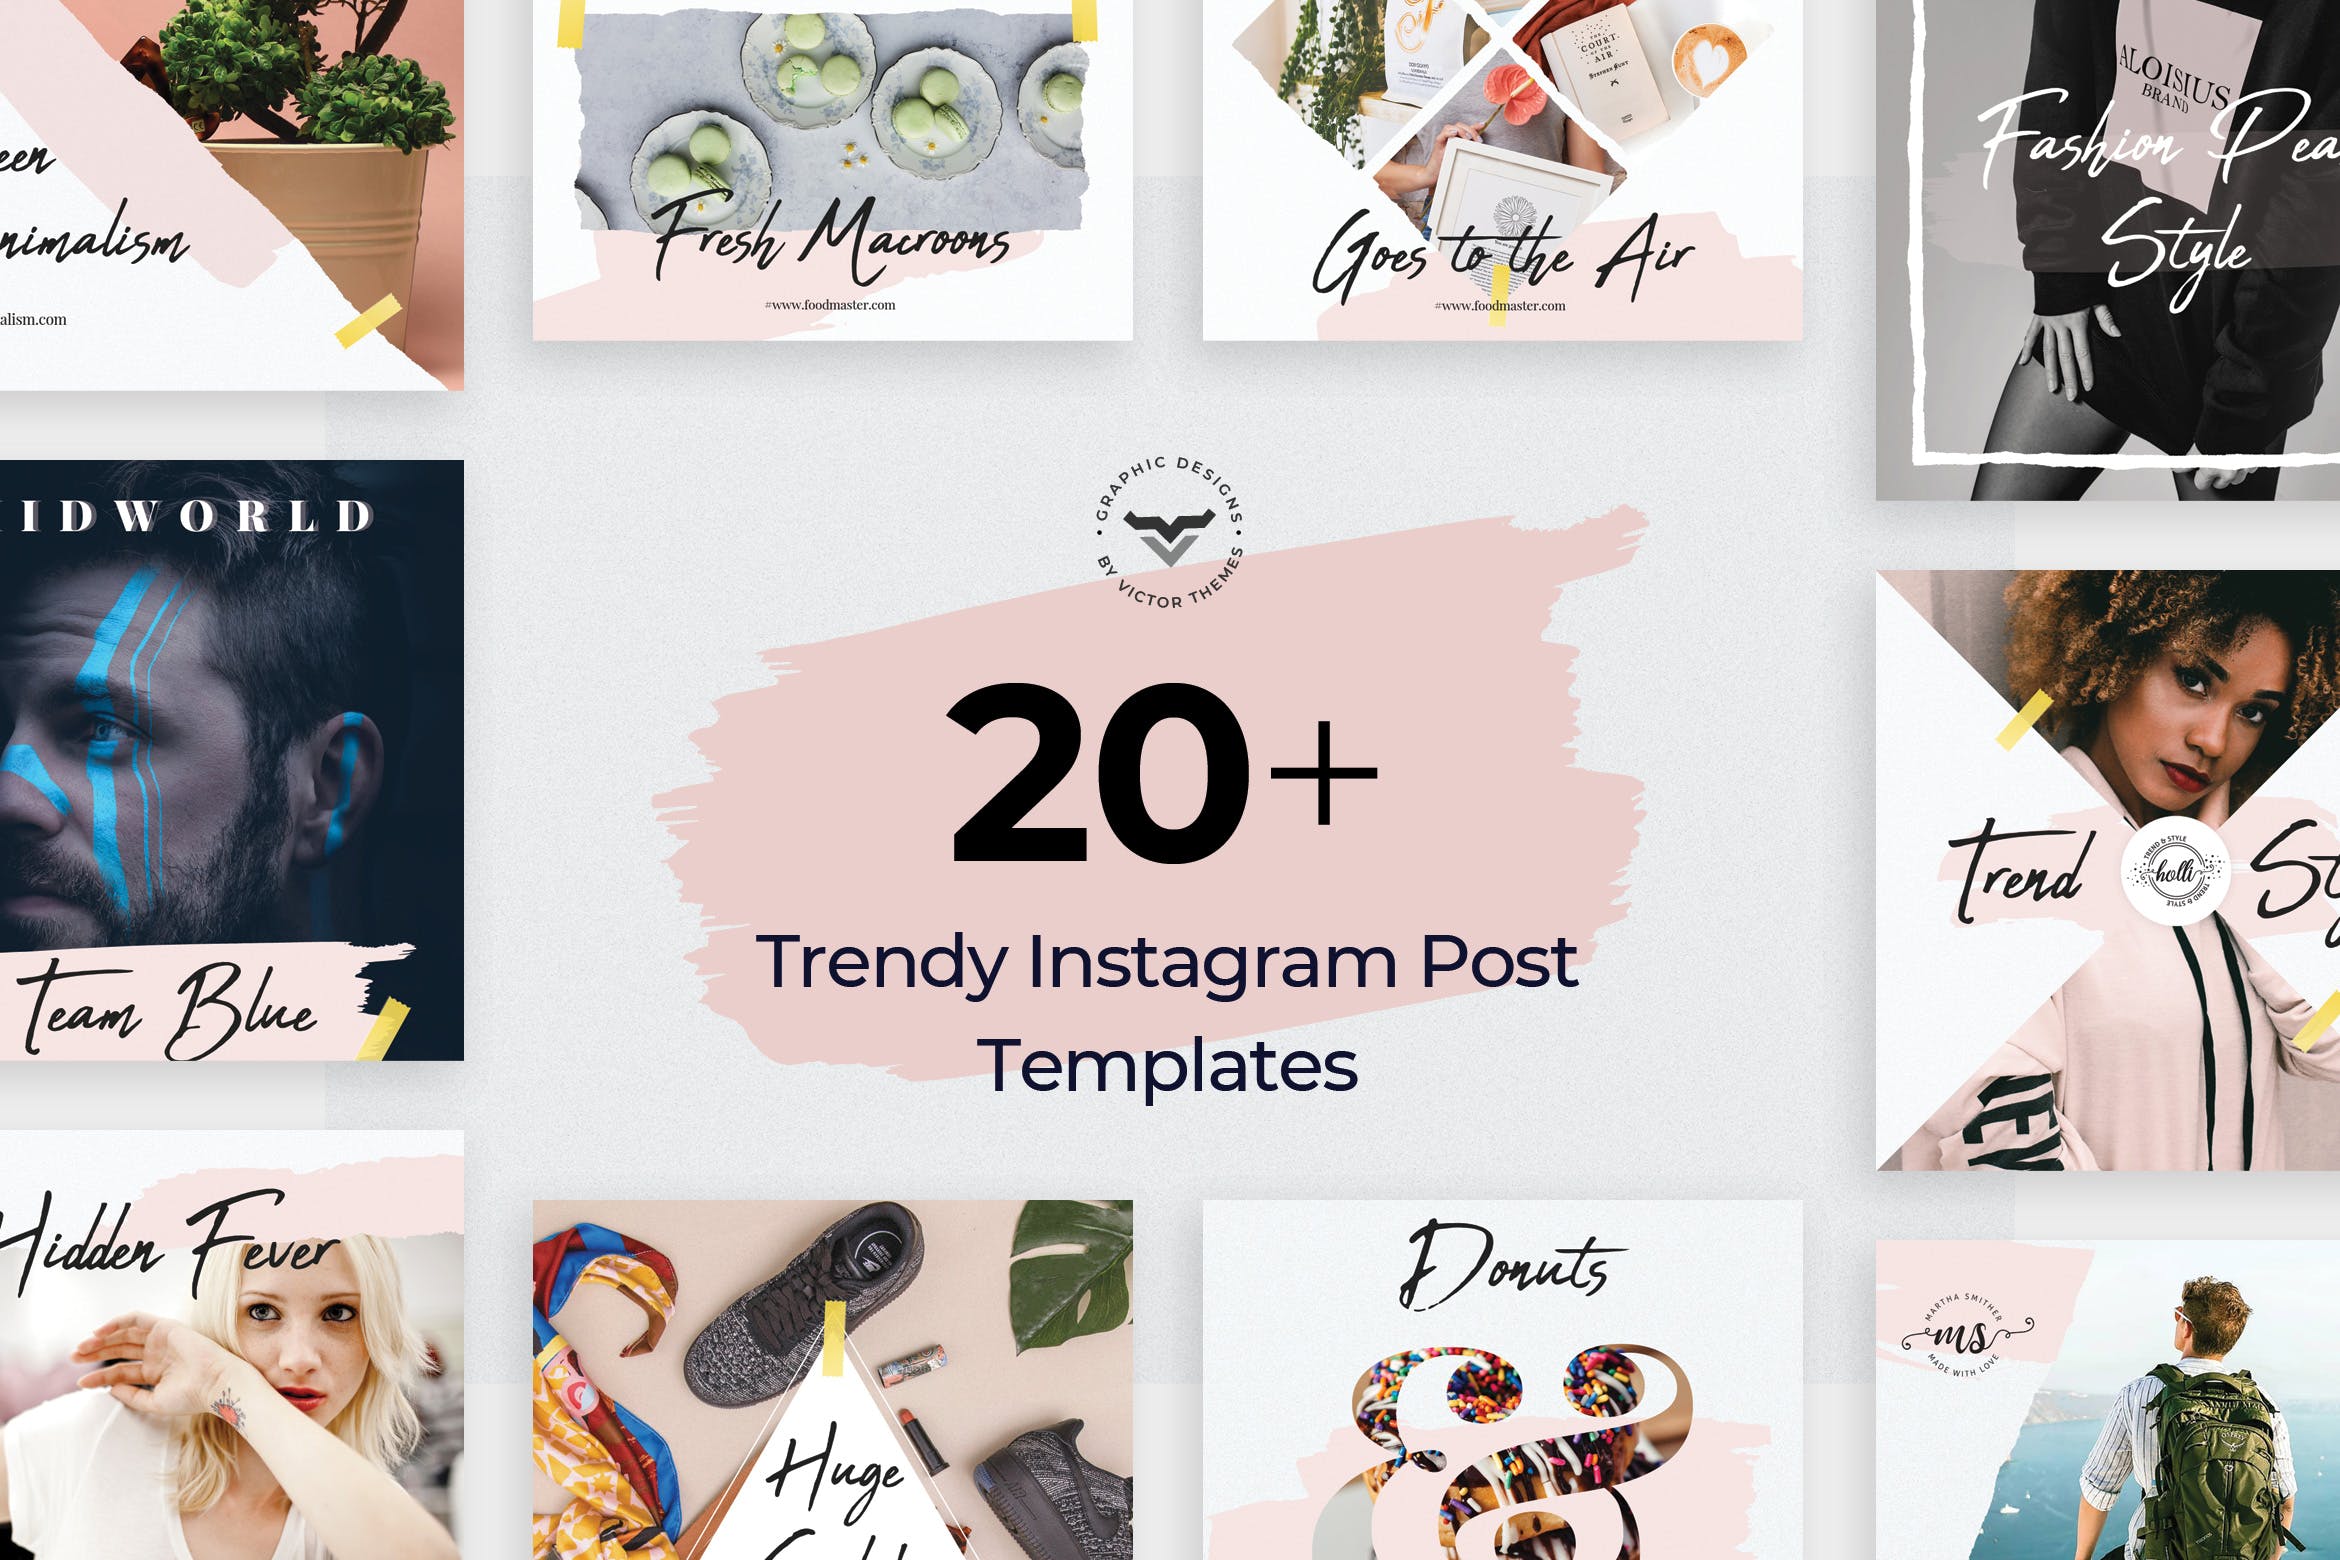 20+创意便利贴设计风格Instagram社交贴图模板素材中国精选 Instagram Post Templates插图